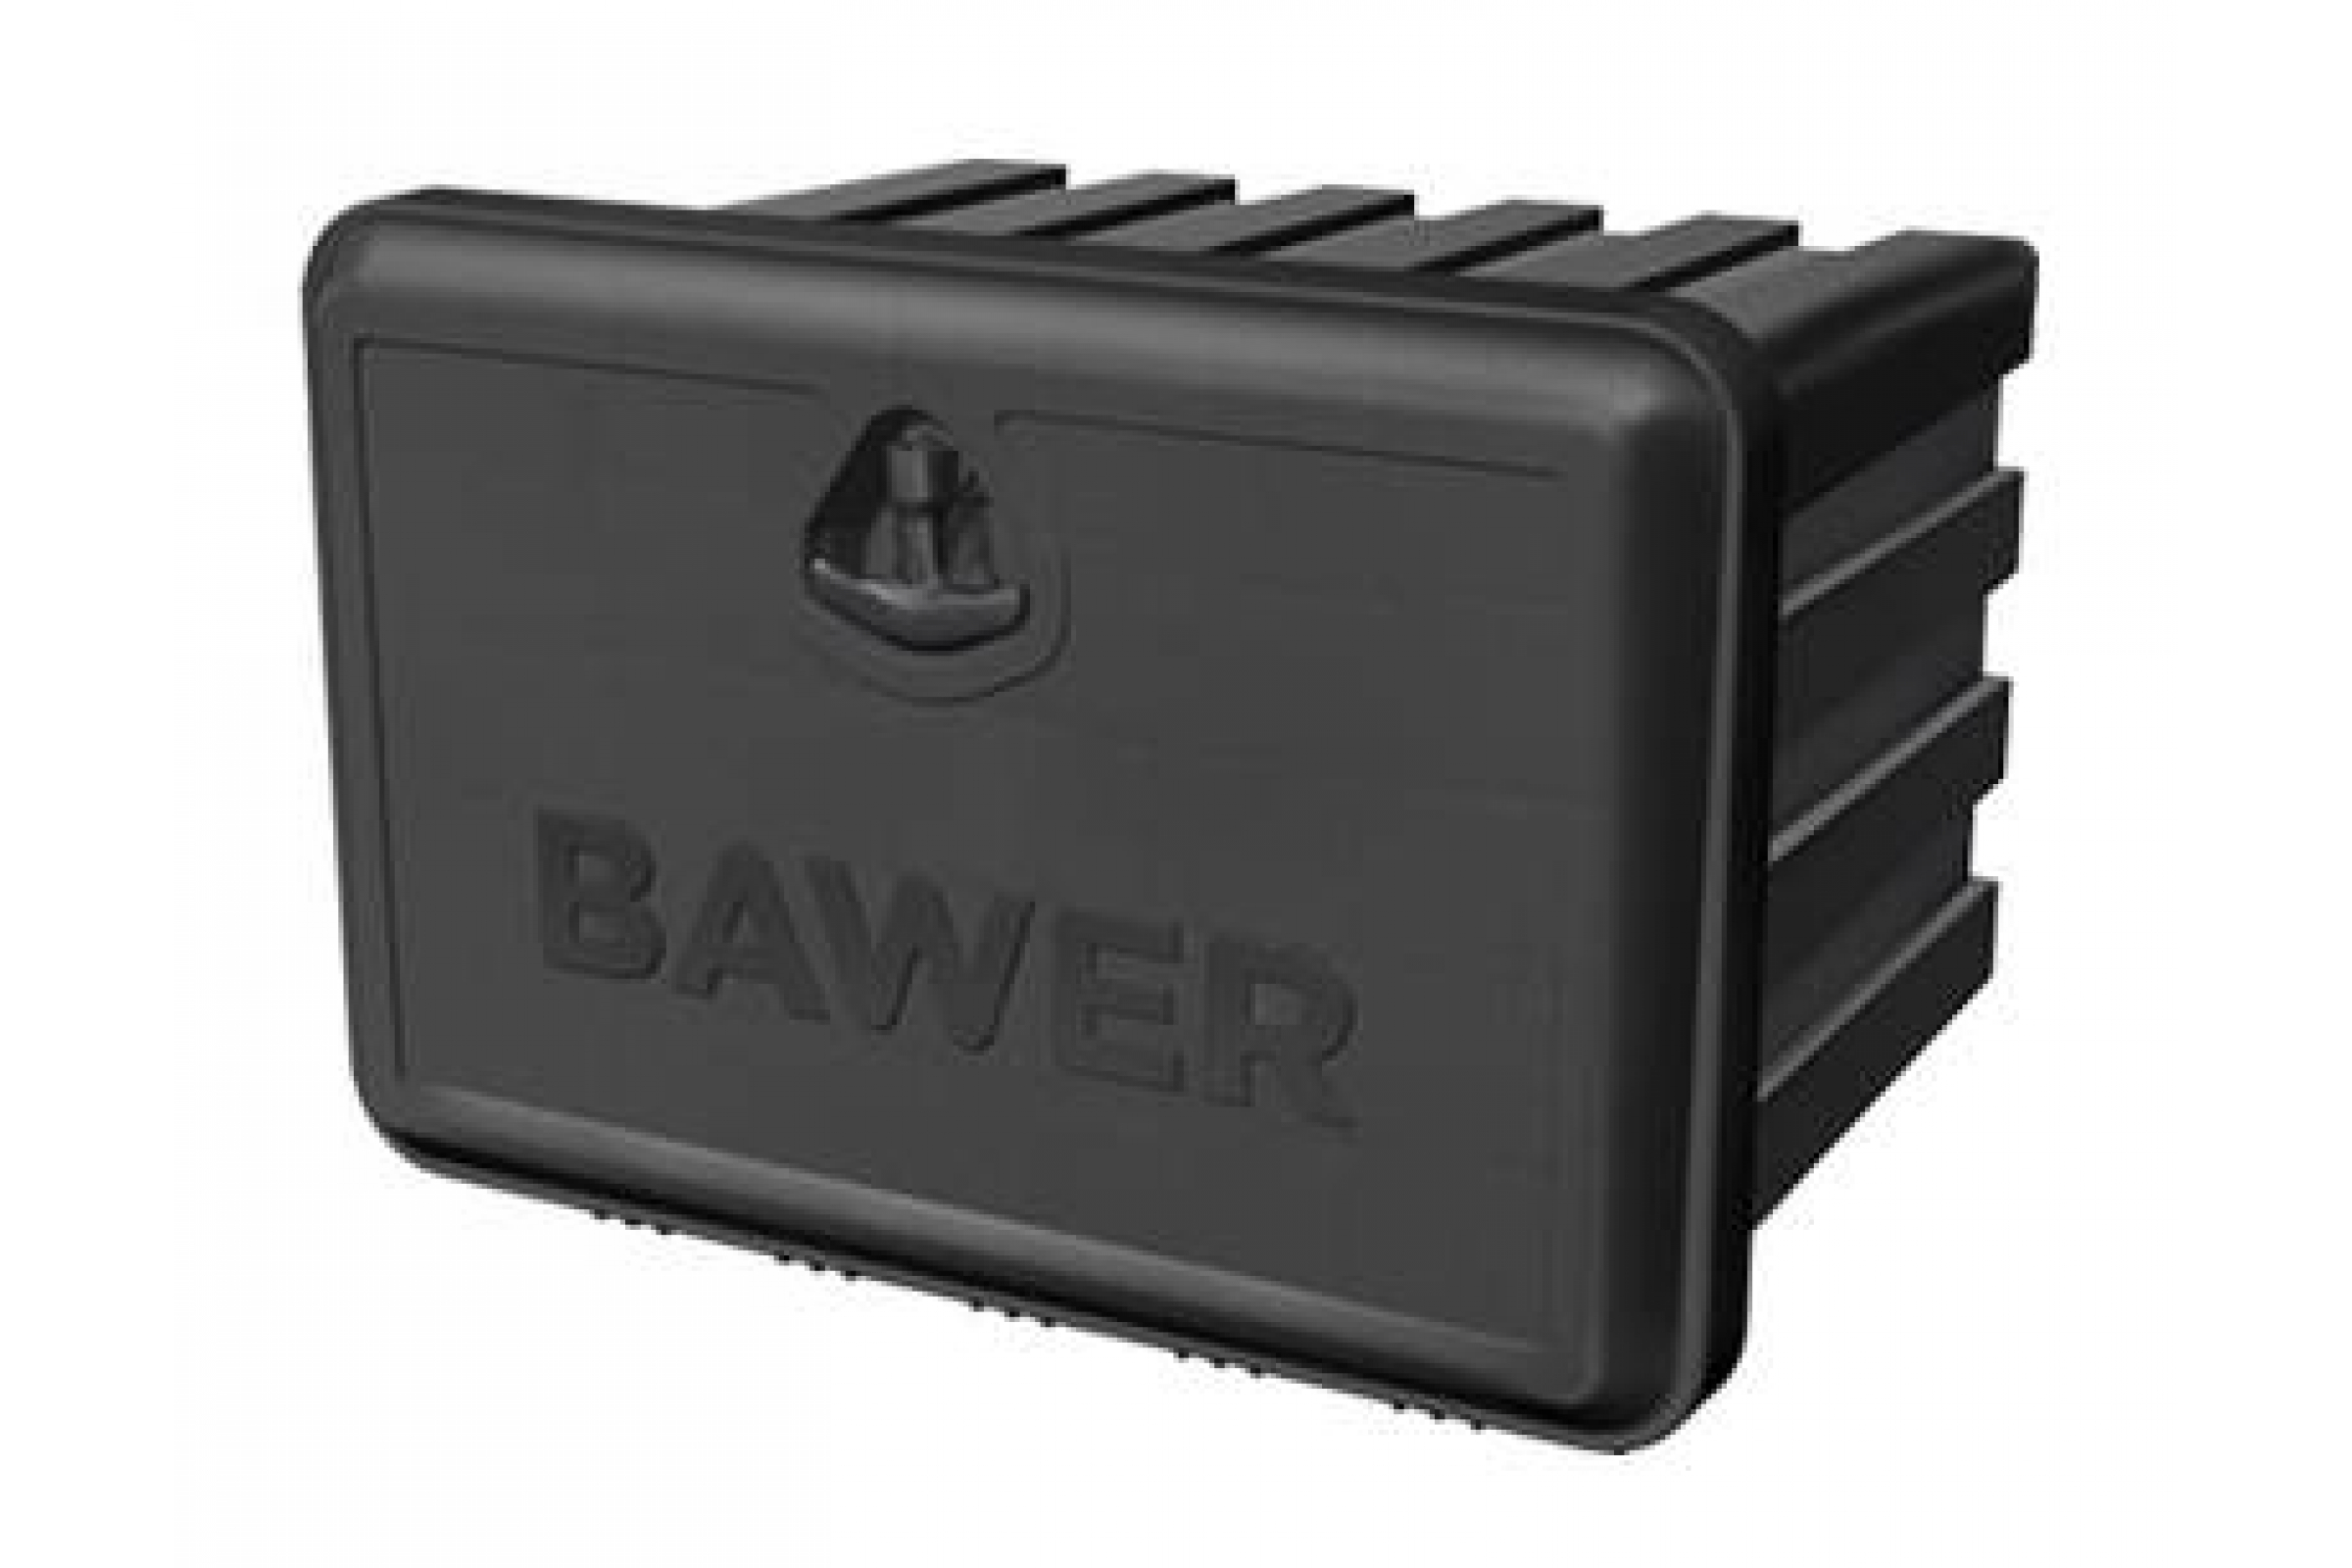 Ящик для инструментов для грузовиков. Bawer e015000 ящик инструментальный. Ящик инструментальный Daken 400 81000. Инструментальный ящик Bawer e025000. Bawer ящики для грузовиков.